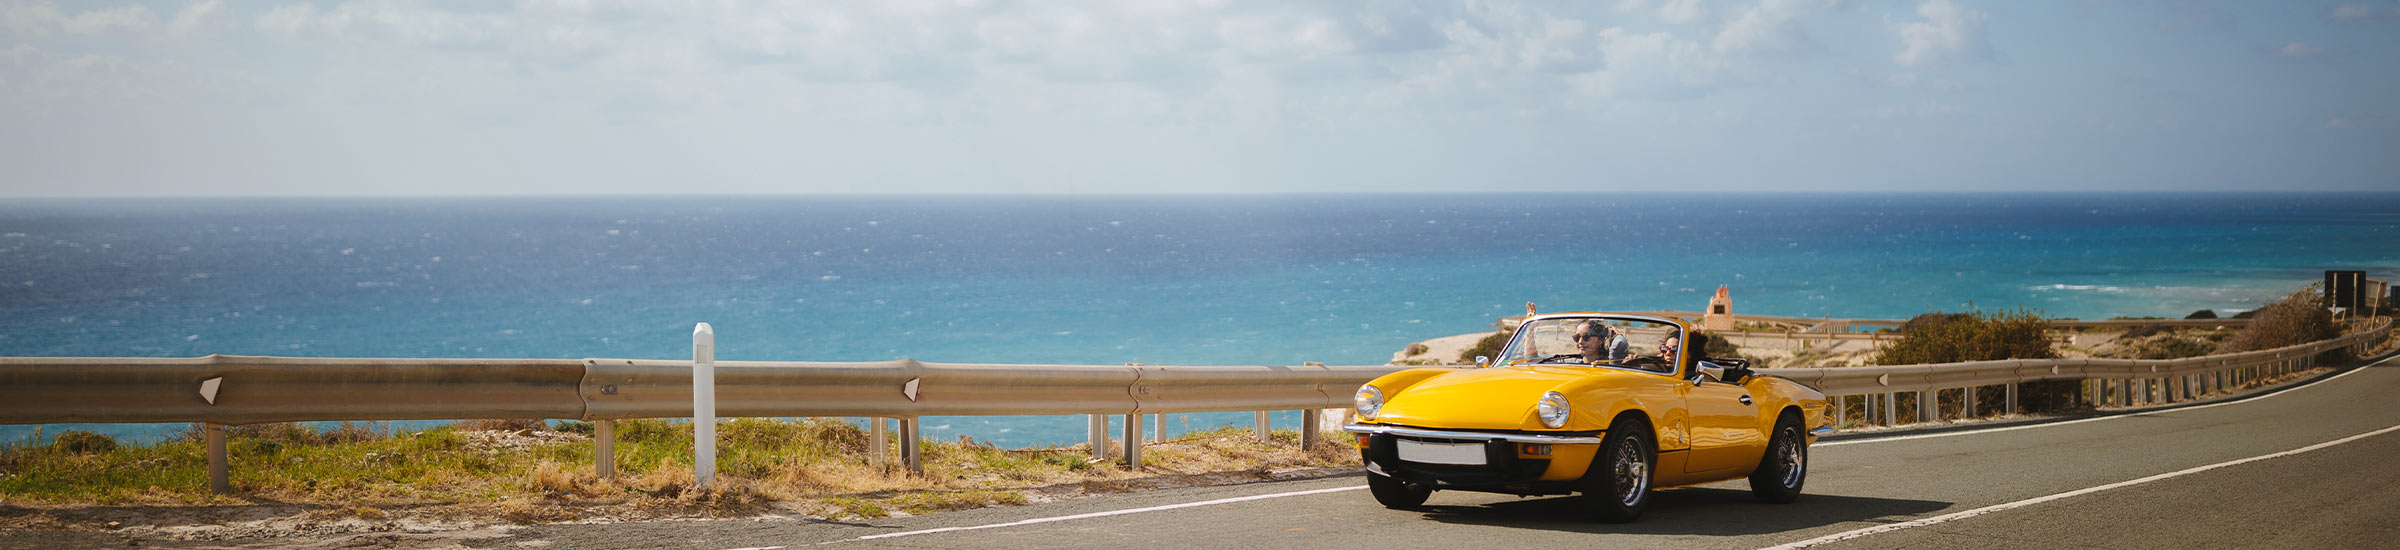 Frau fährt im gelben Cabrio an der Küste entlang